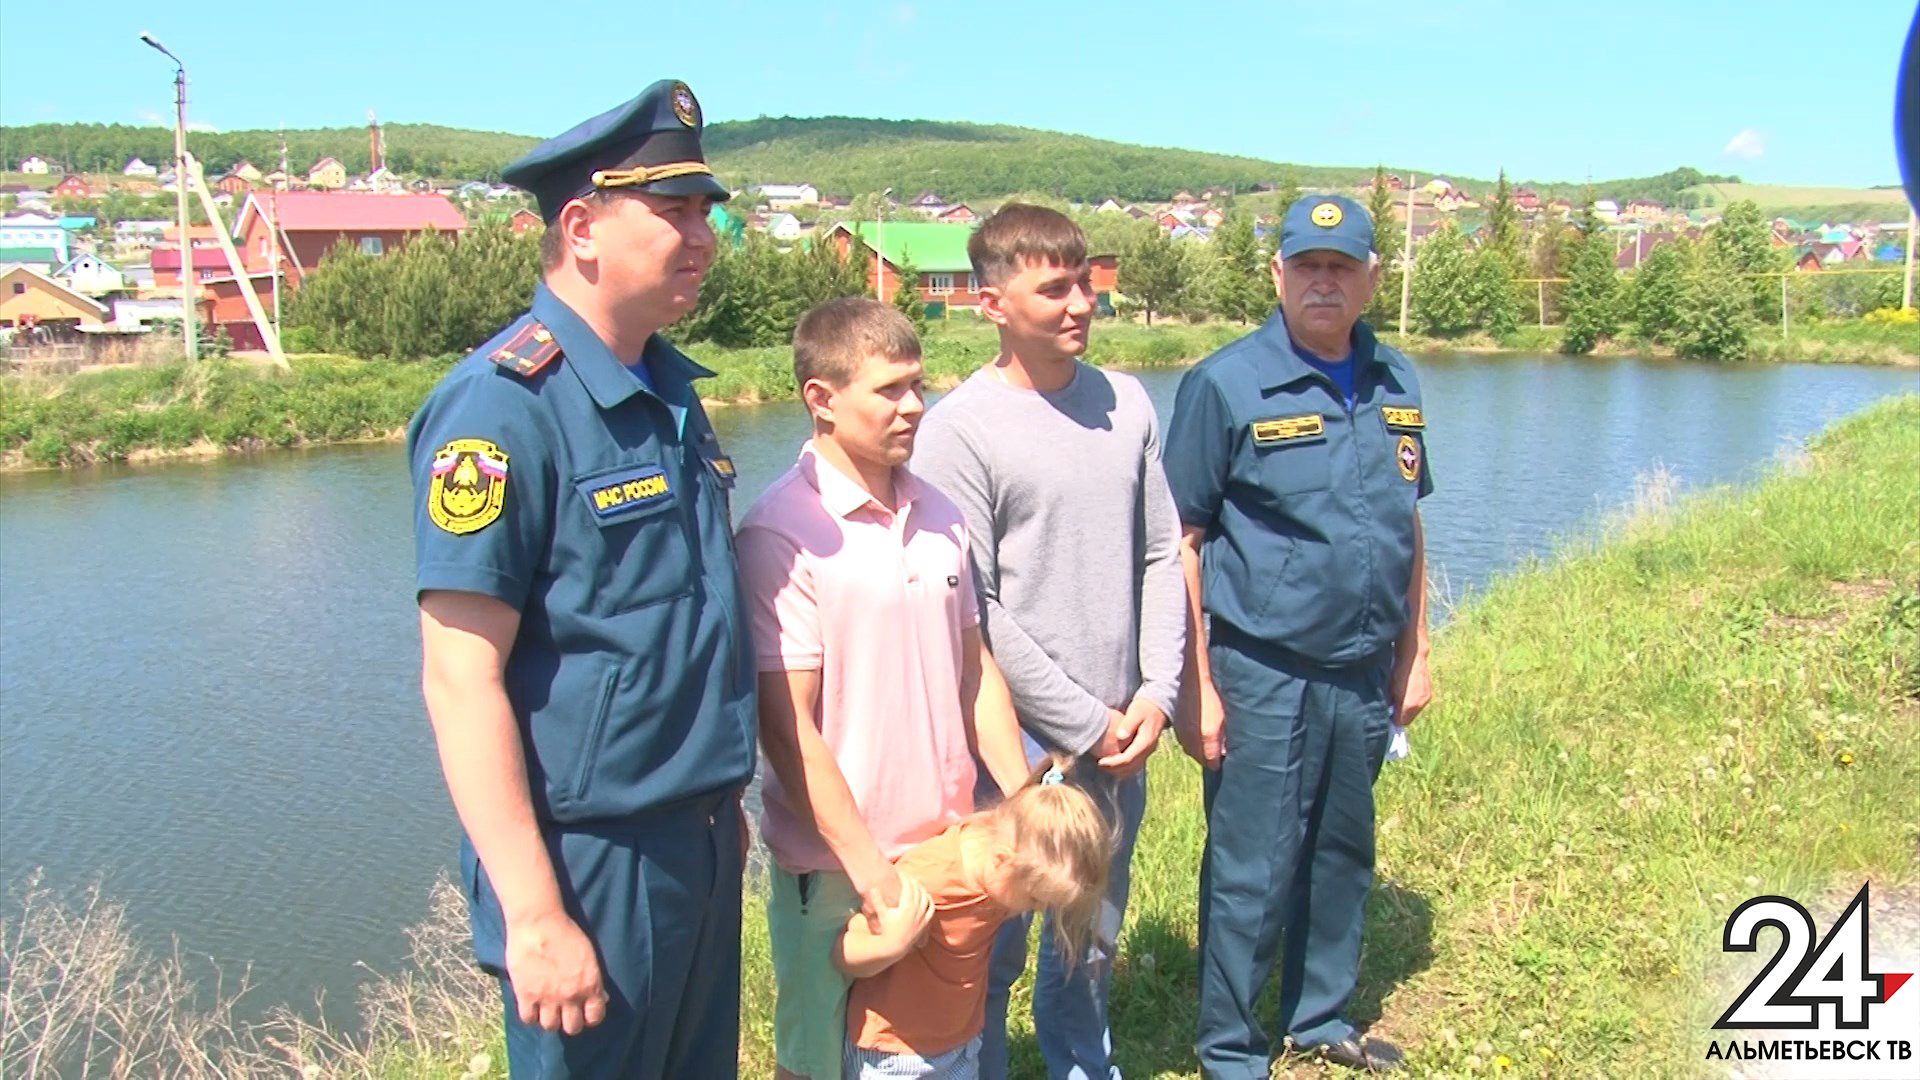 Удивительная история спасения детей произошла в Альметьевске 31 мая